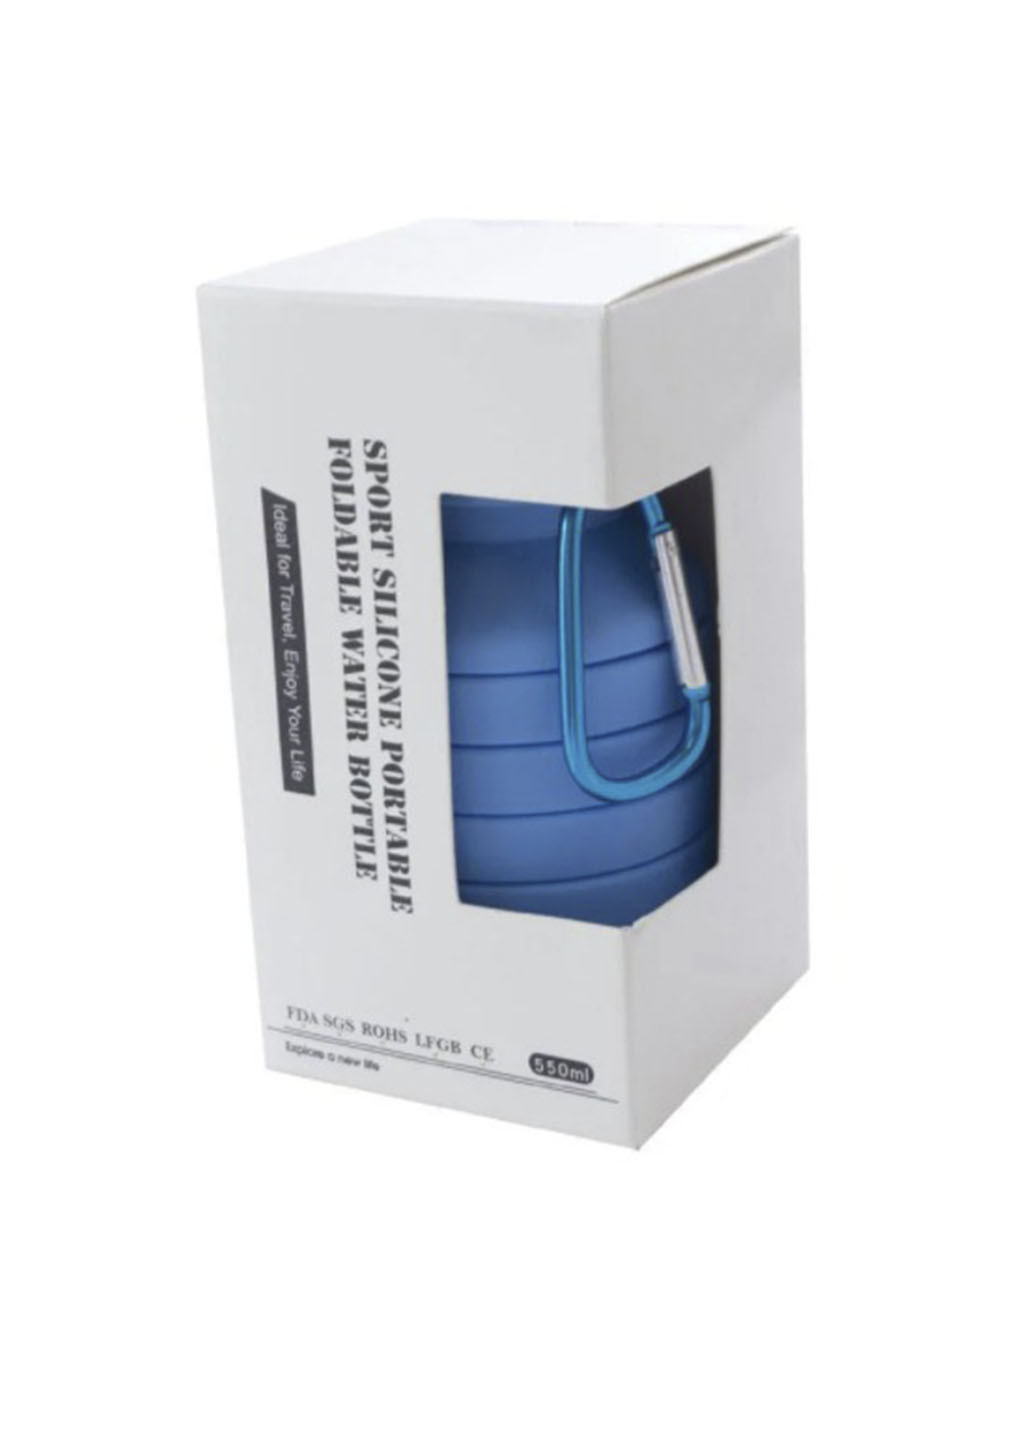 Складная силиконовая бутылка LUX Bottle 550 мл легкая и компактная для путешествий XO синяя